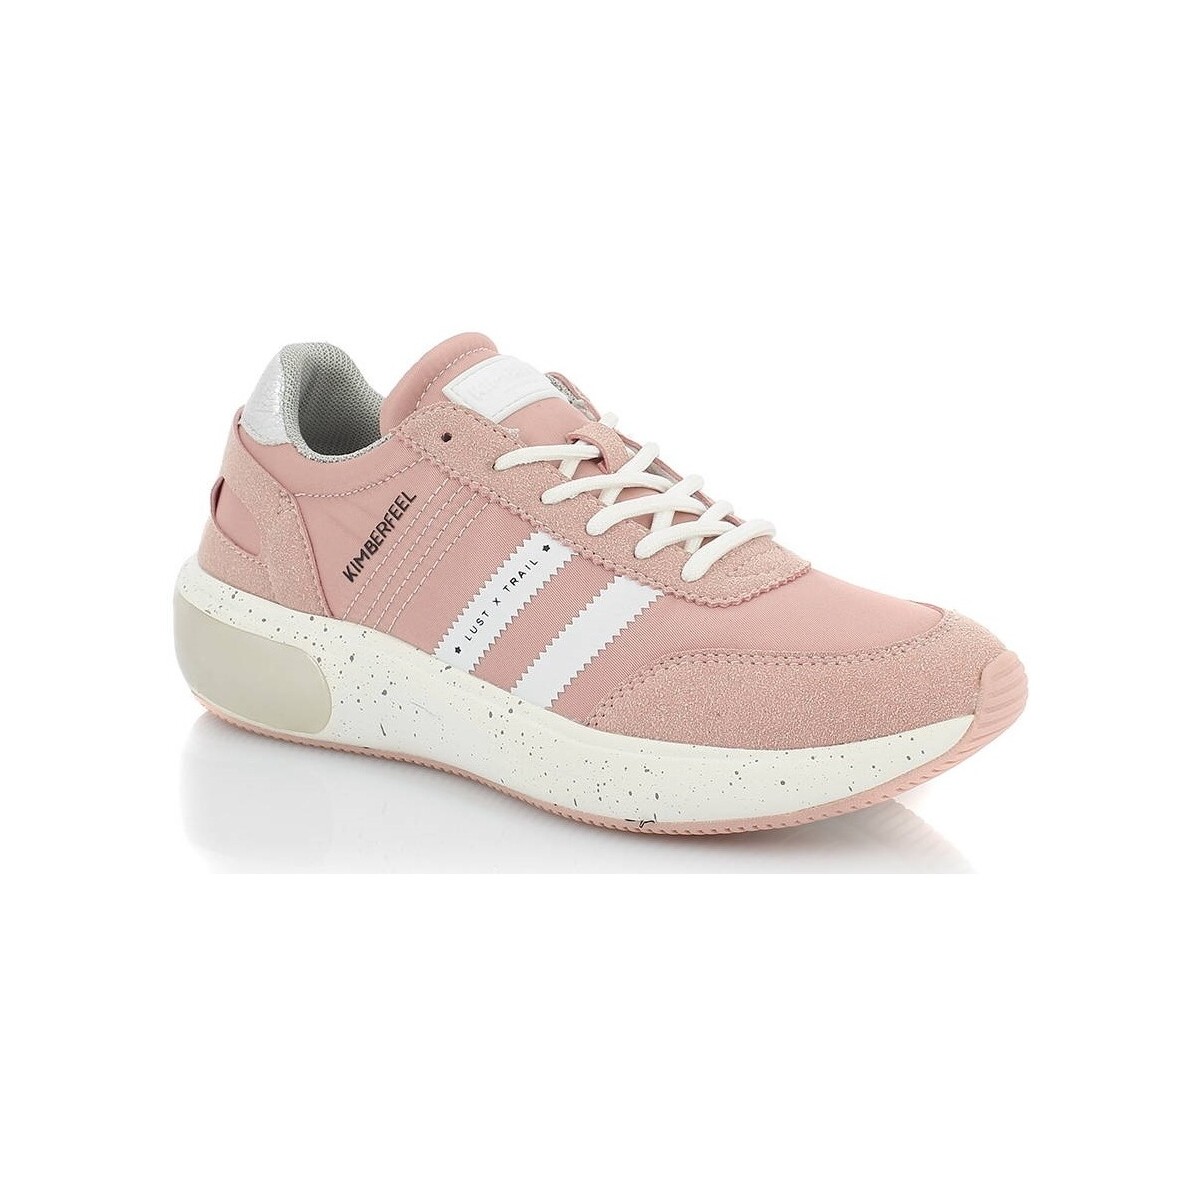 Pantofi Femei Sneakers Kimberfeel MARINA roz